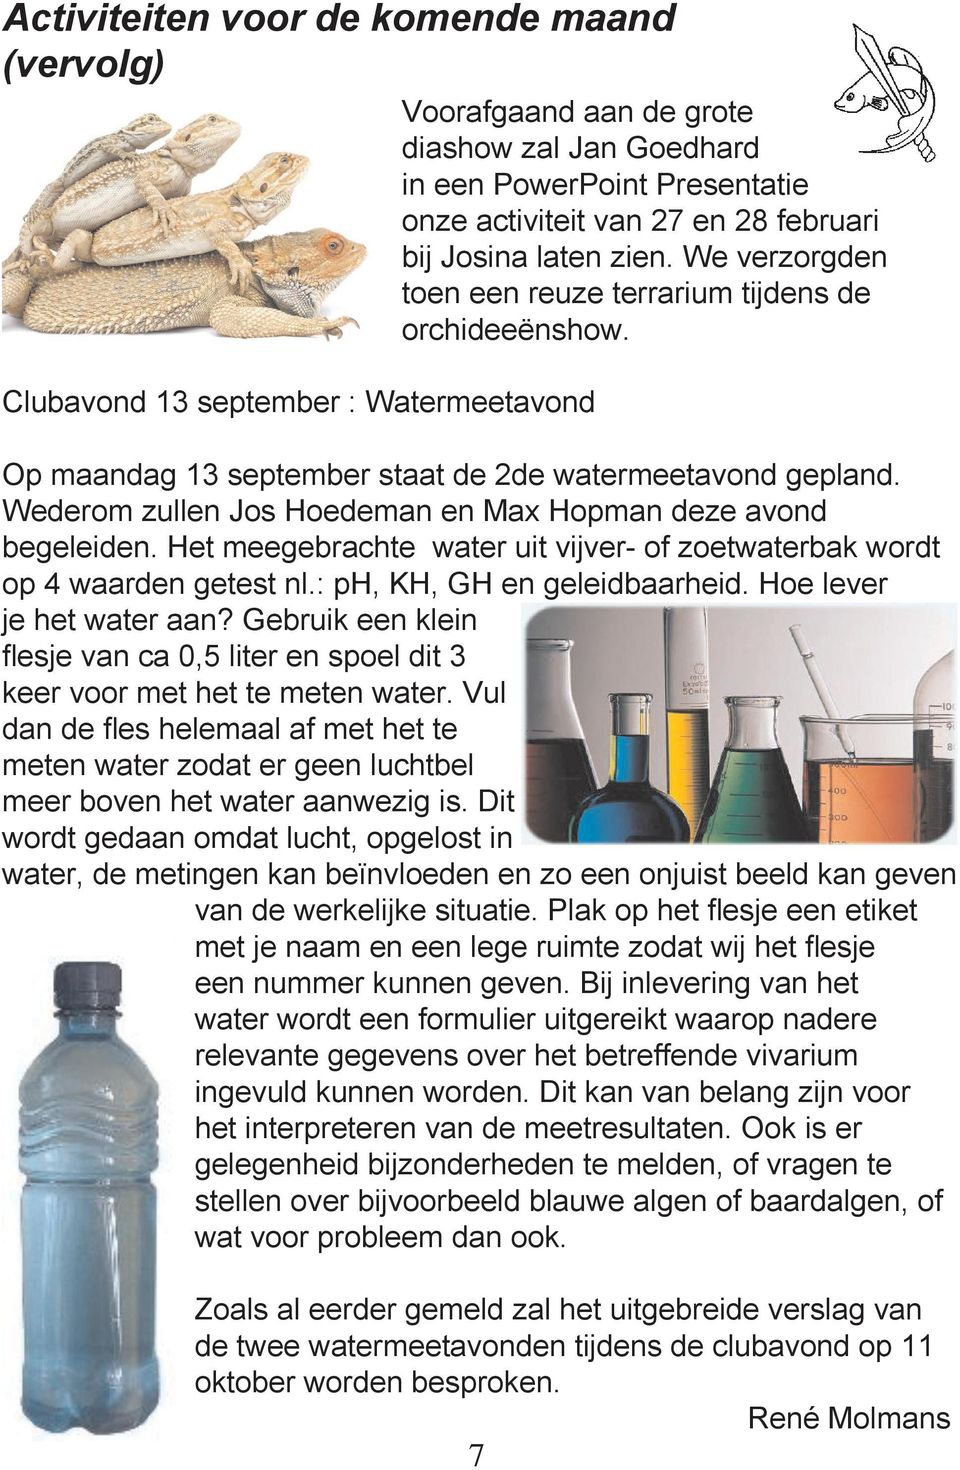 Wederom zullen Jos Hoedeman en Max Hopman deze avond begeleiden. Het meegebrachte water uit vijver- of zoetwaterbak wordt op 4 waarden getest nl.: ph, KH, GH en geleidbaarheid.